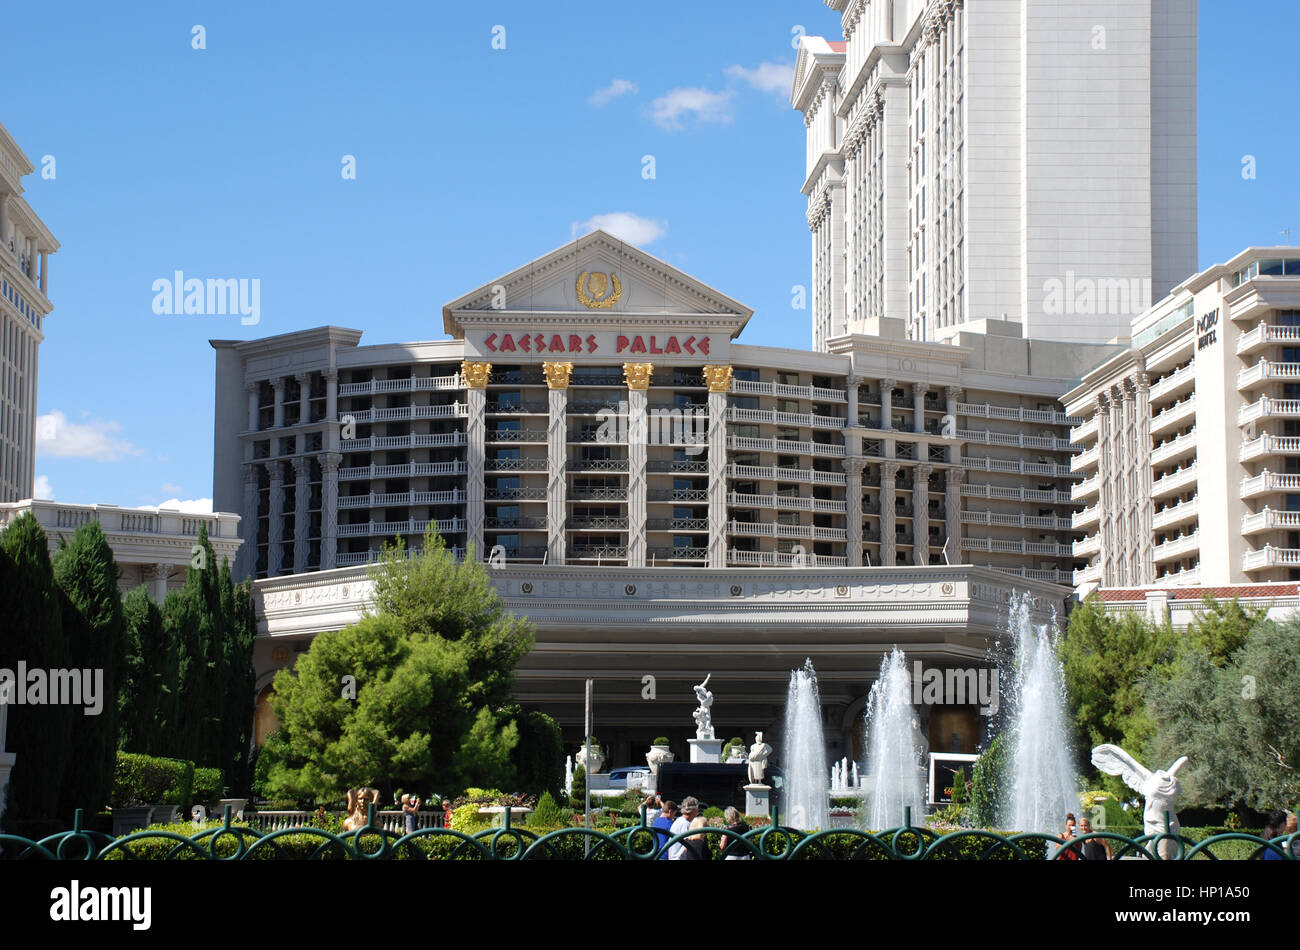 Caesars Palace Las Vegas Stock Photo